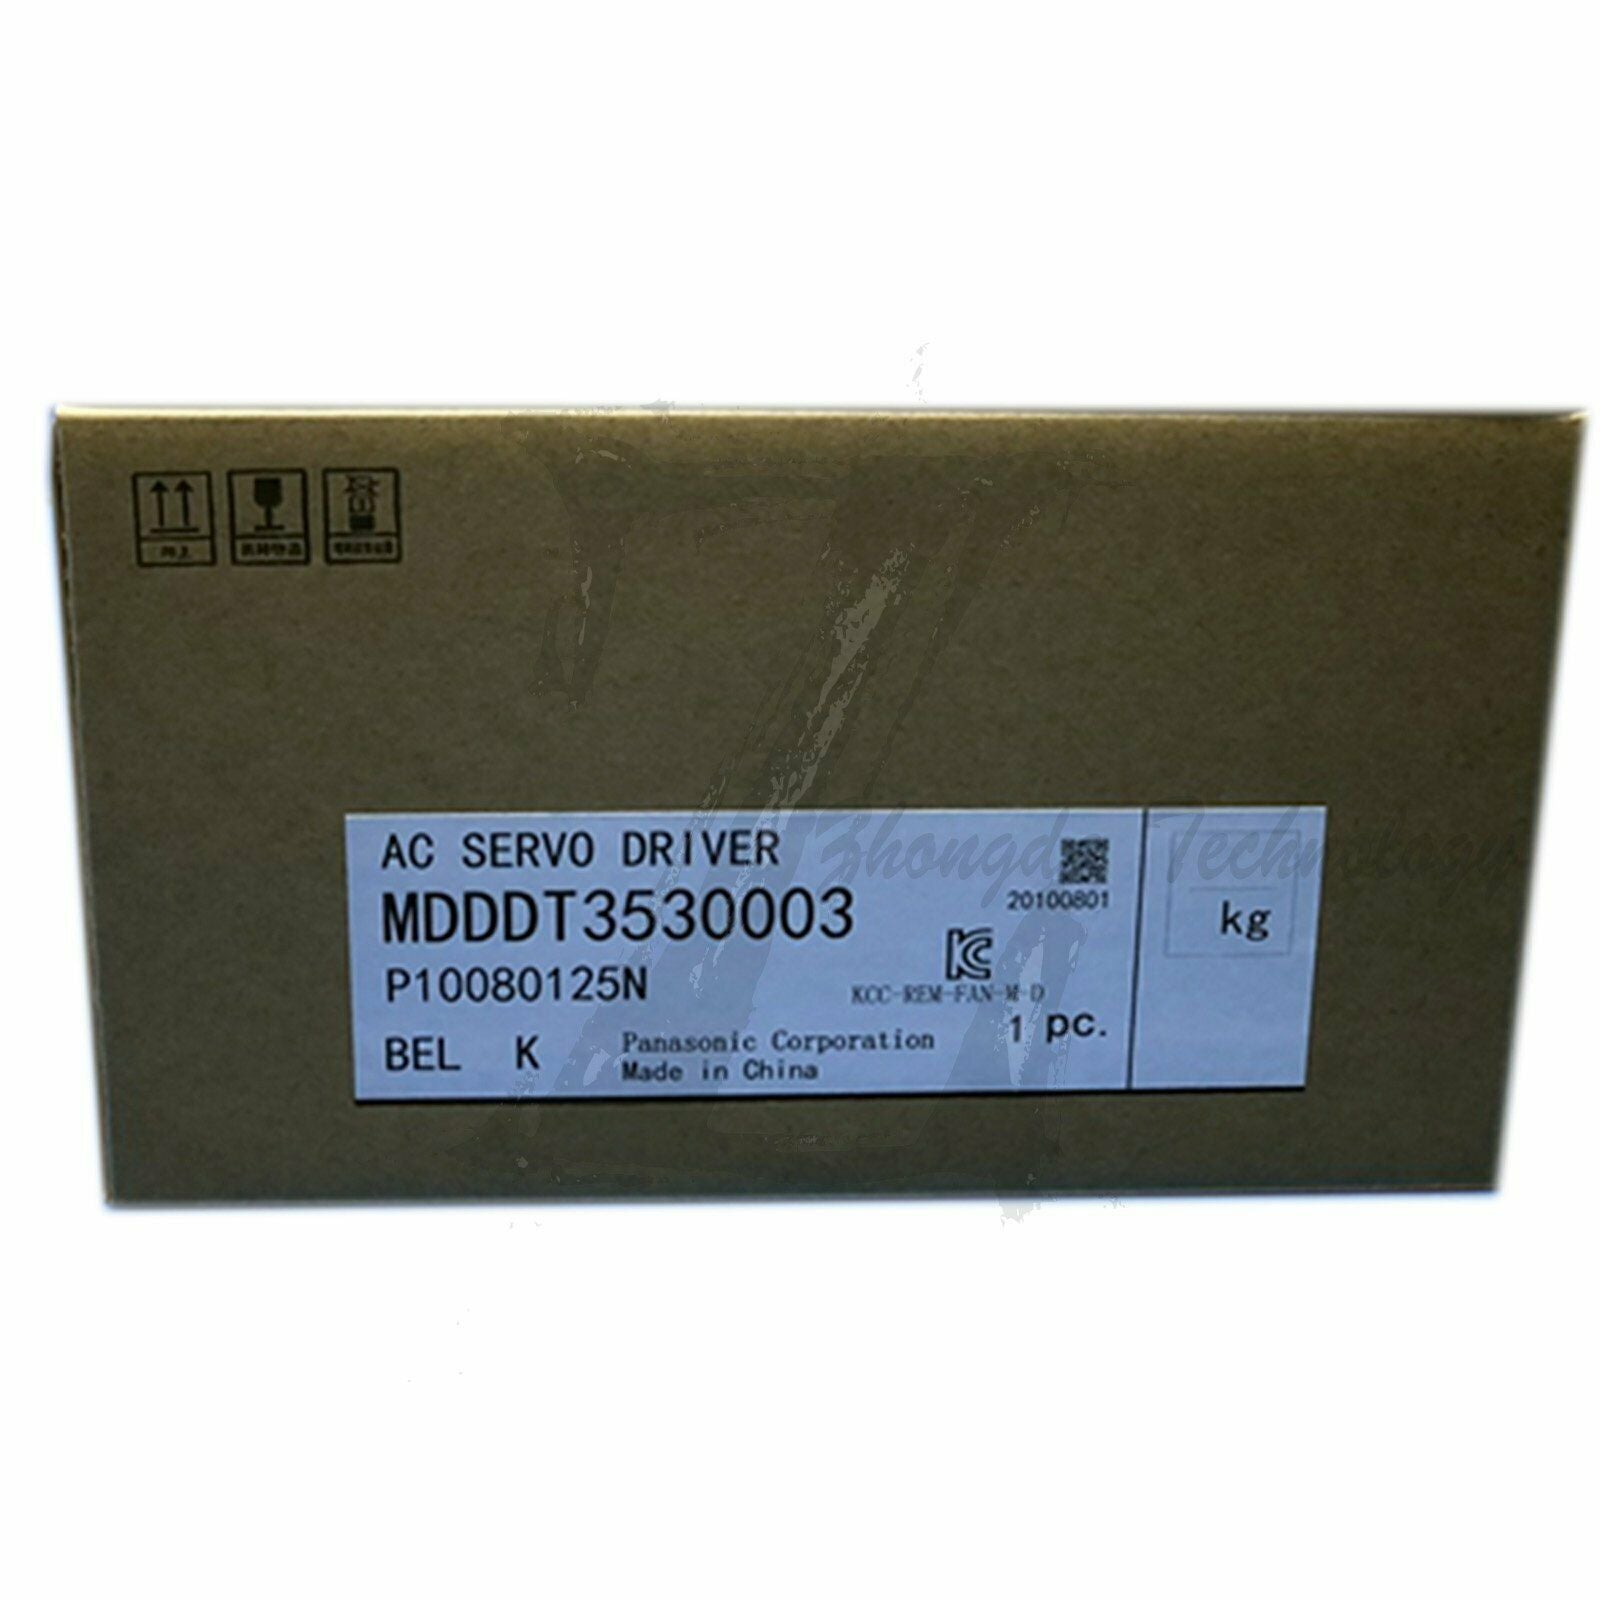 New In Box 1PC Panasonic MDDDT3530003 servo drive